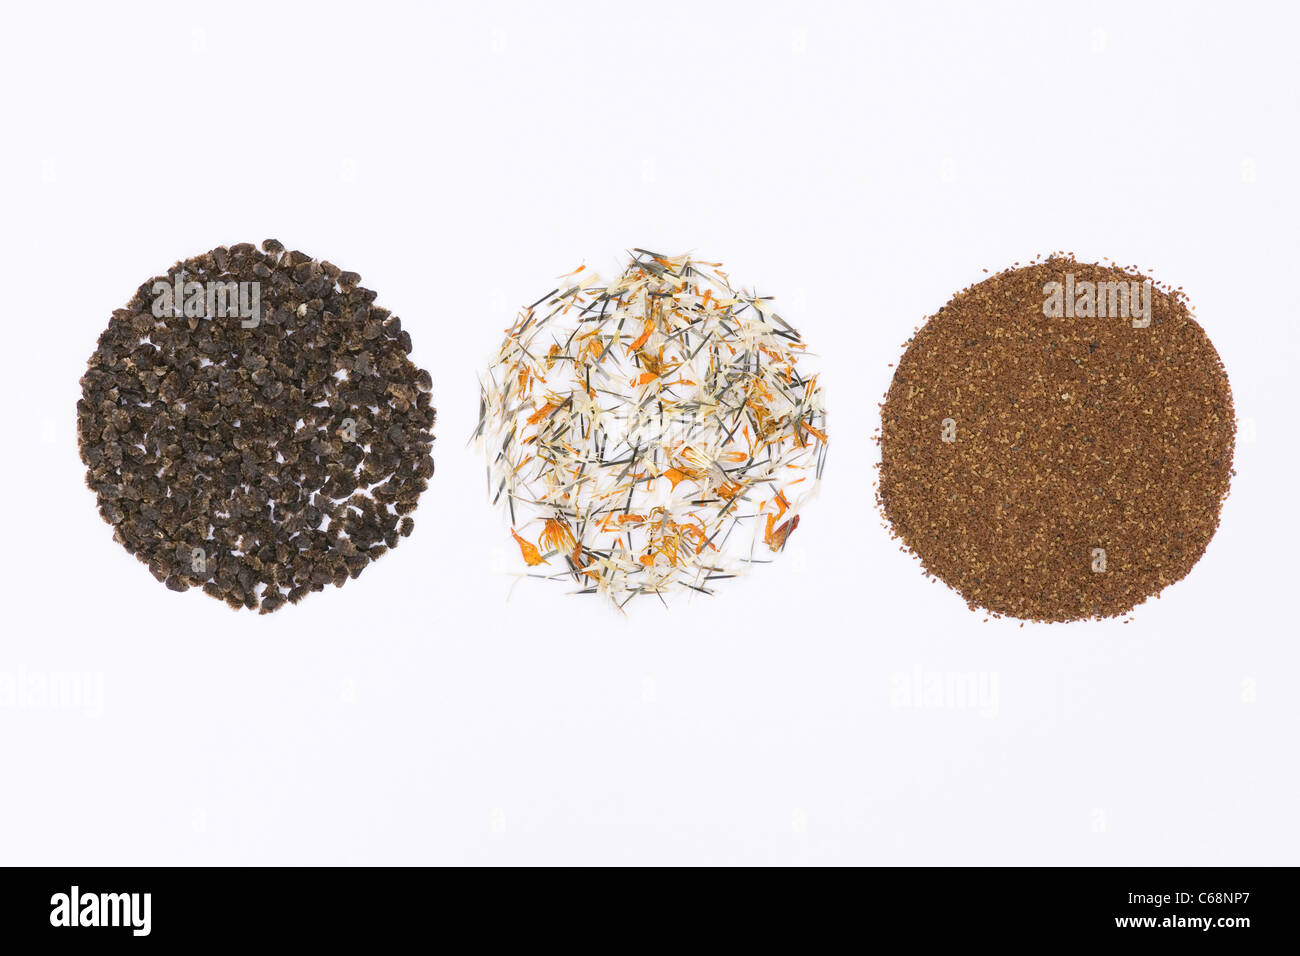 Aconitum, Tagetes et Digitalis graines sur un fond blanc Banque D'Images